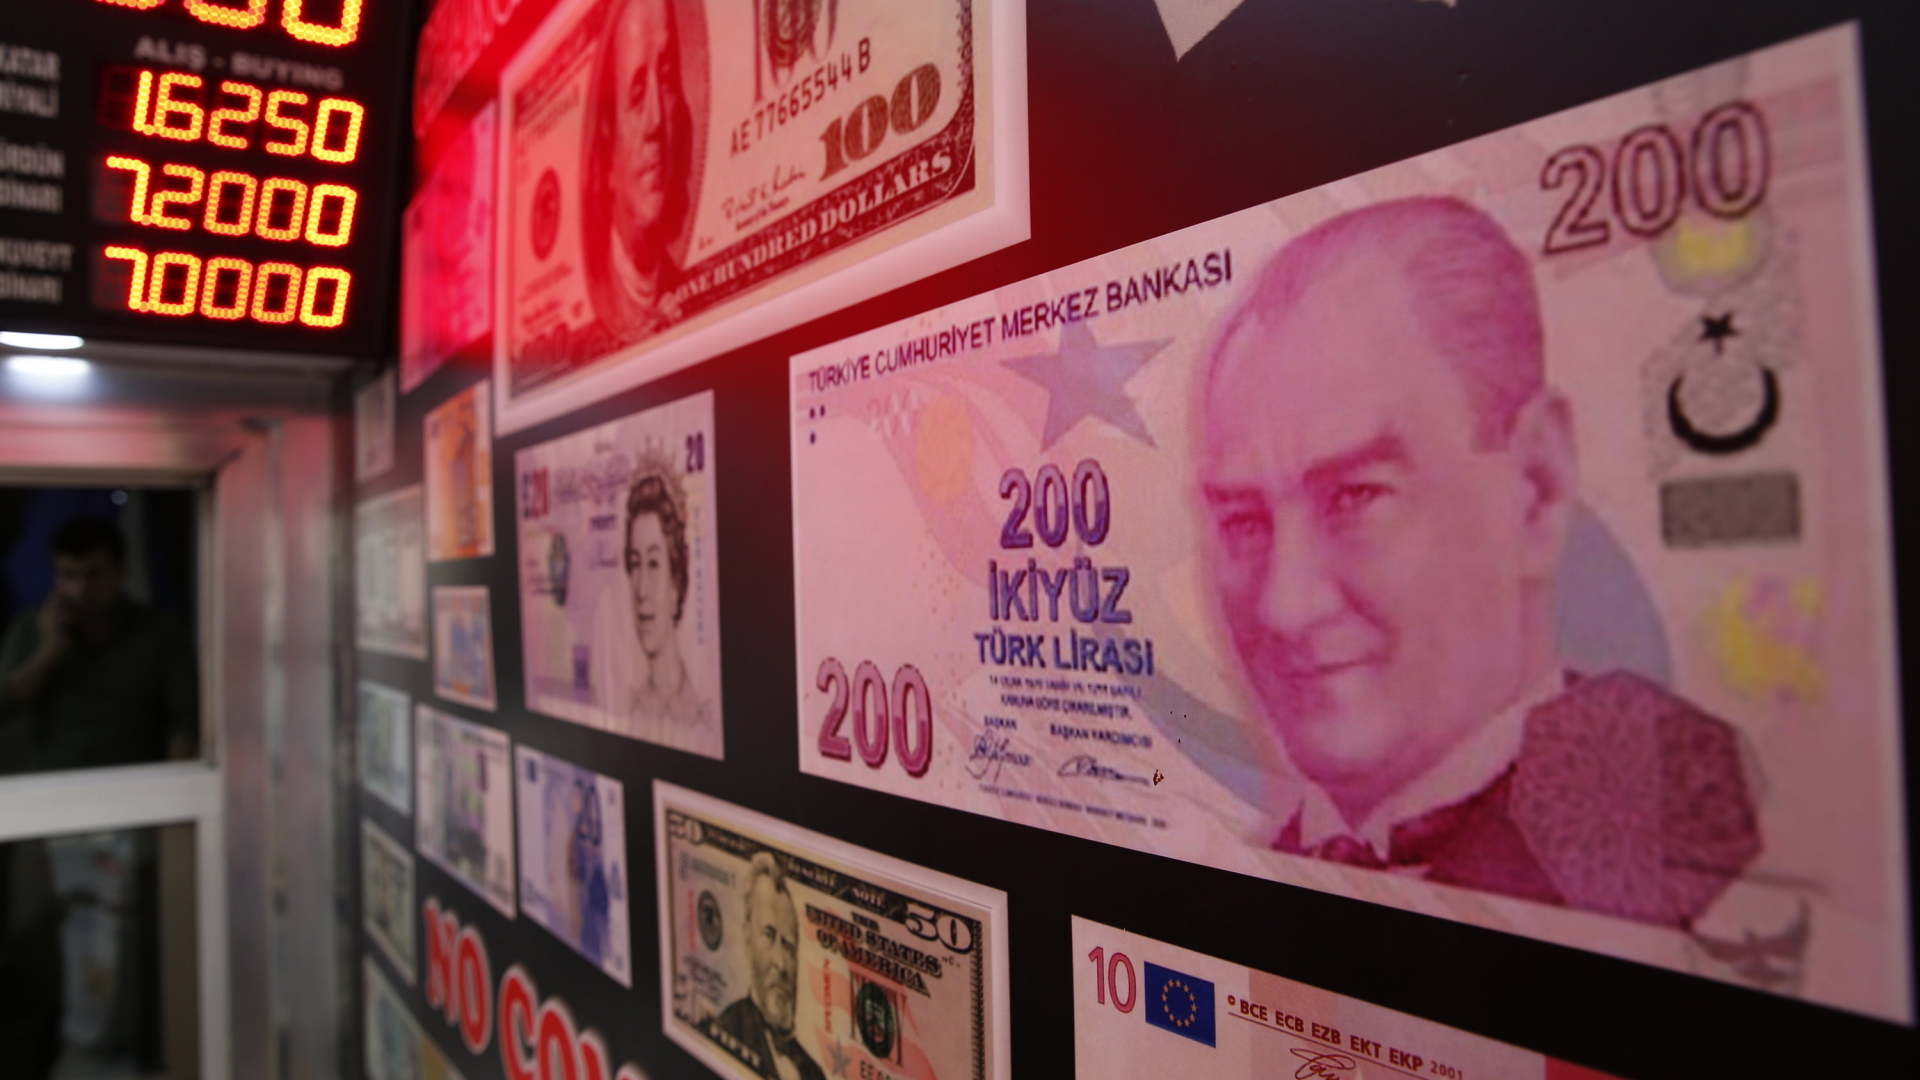 Kopie einer 200-Lire-Banknote in einer Wechselstube in Istanbul | dpa